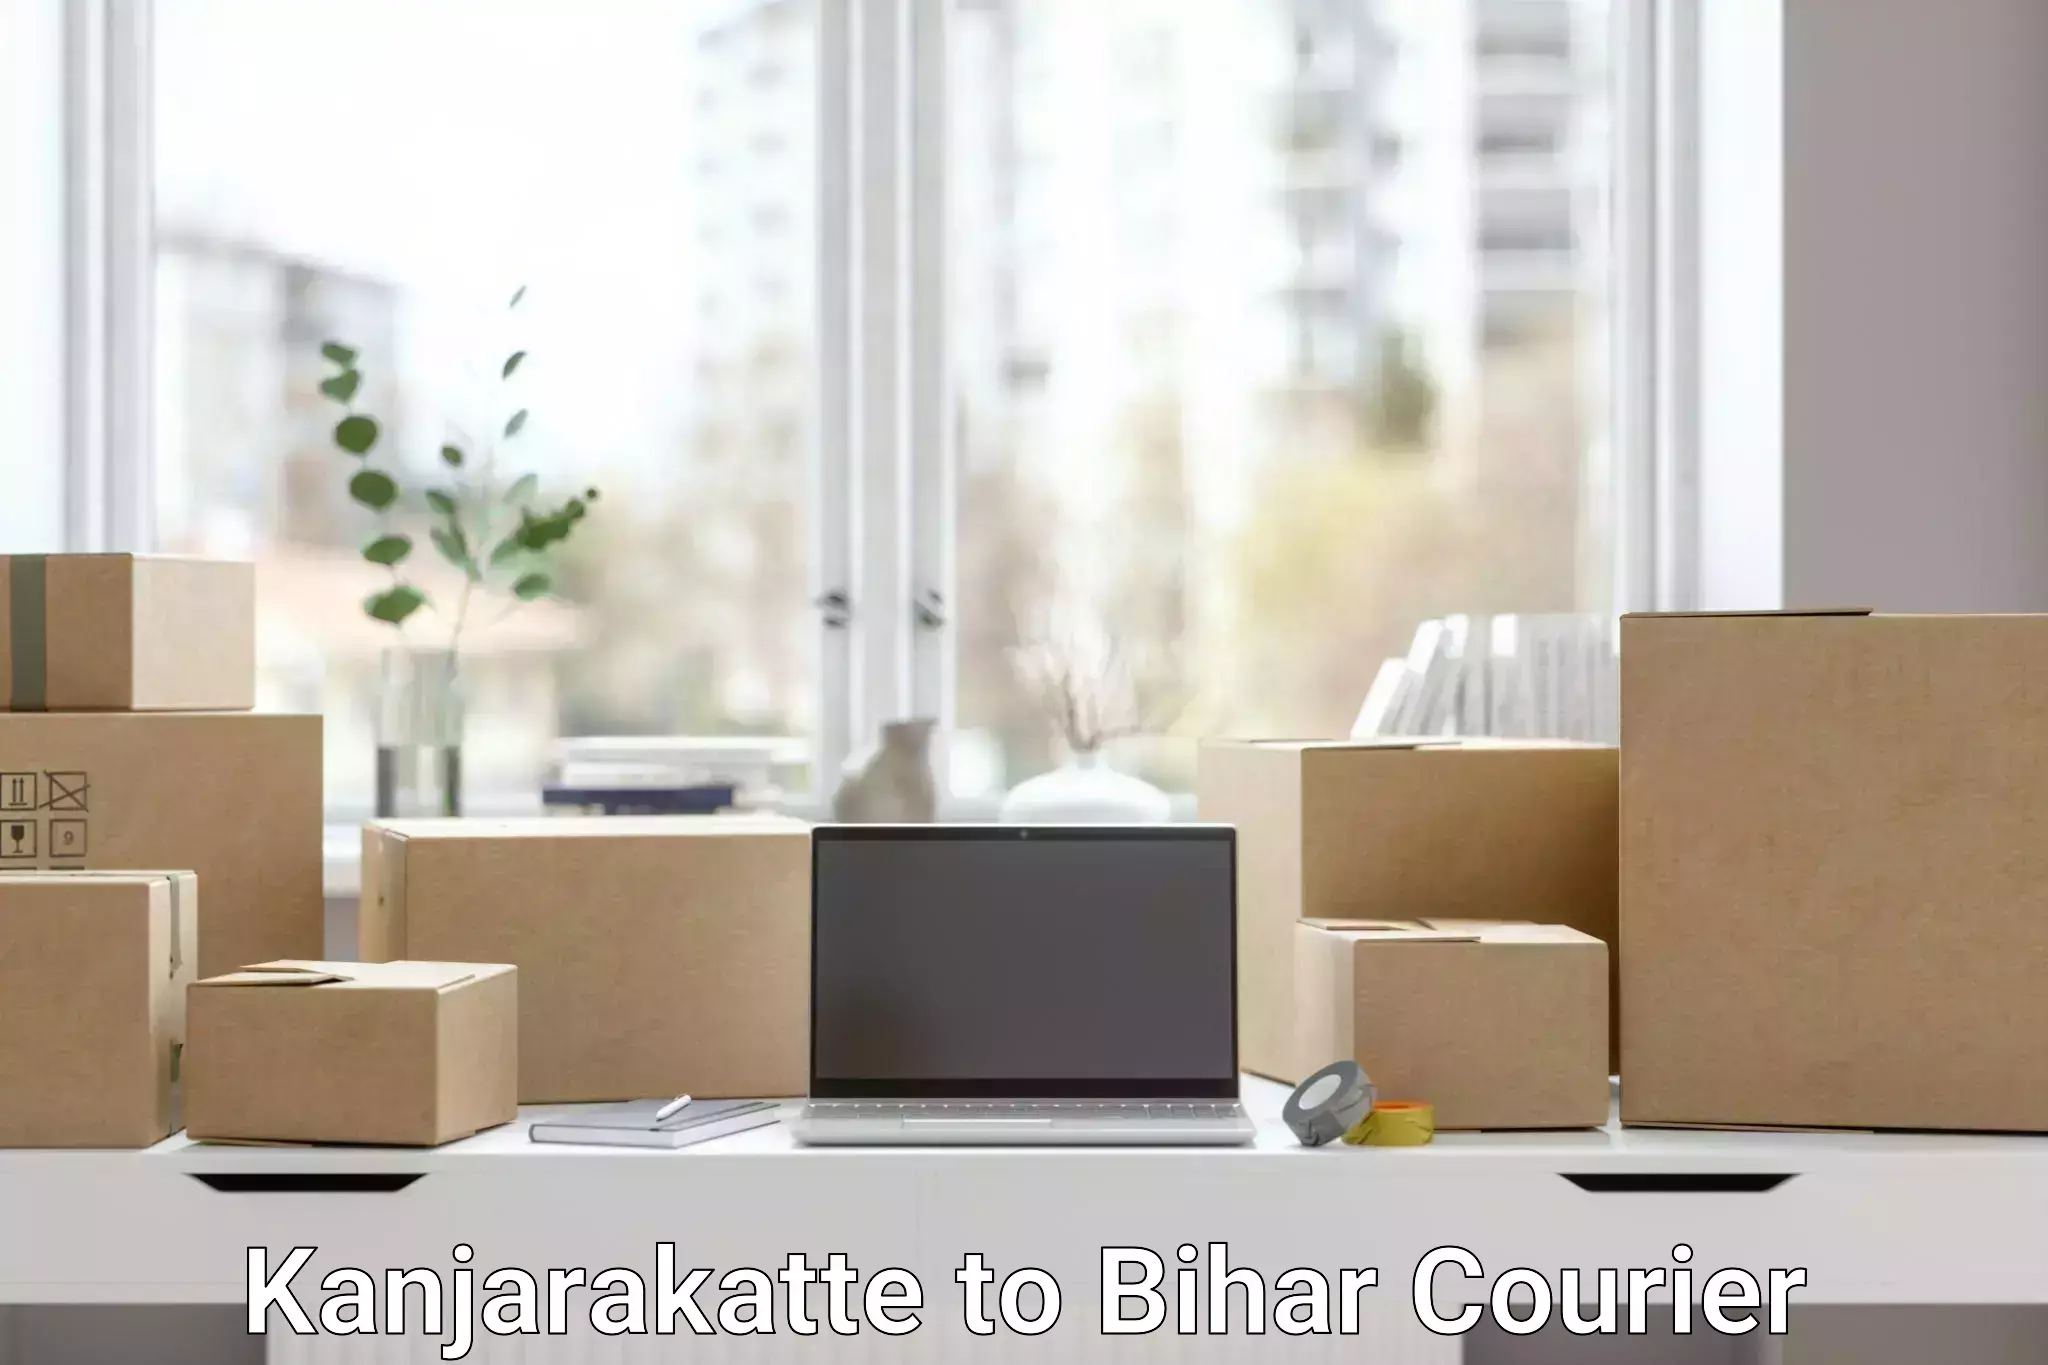 Online package tracking Kanjarakatte to Bettiah